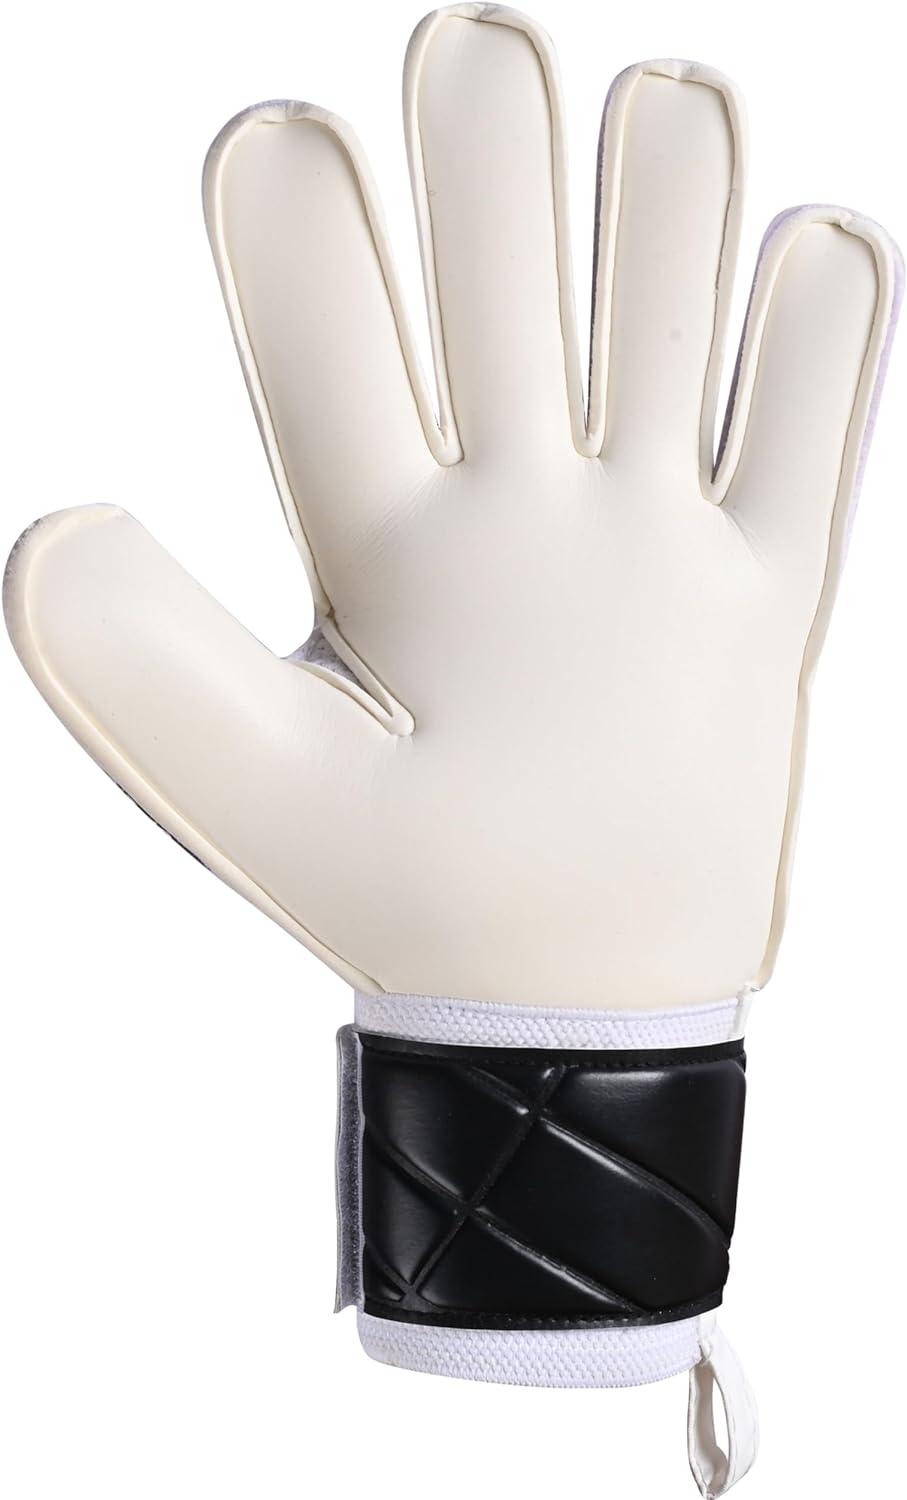 Black and White SP 2.0 Kids Goalkeeper Gloves